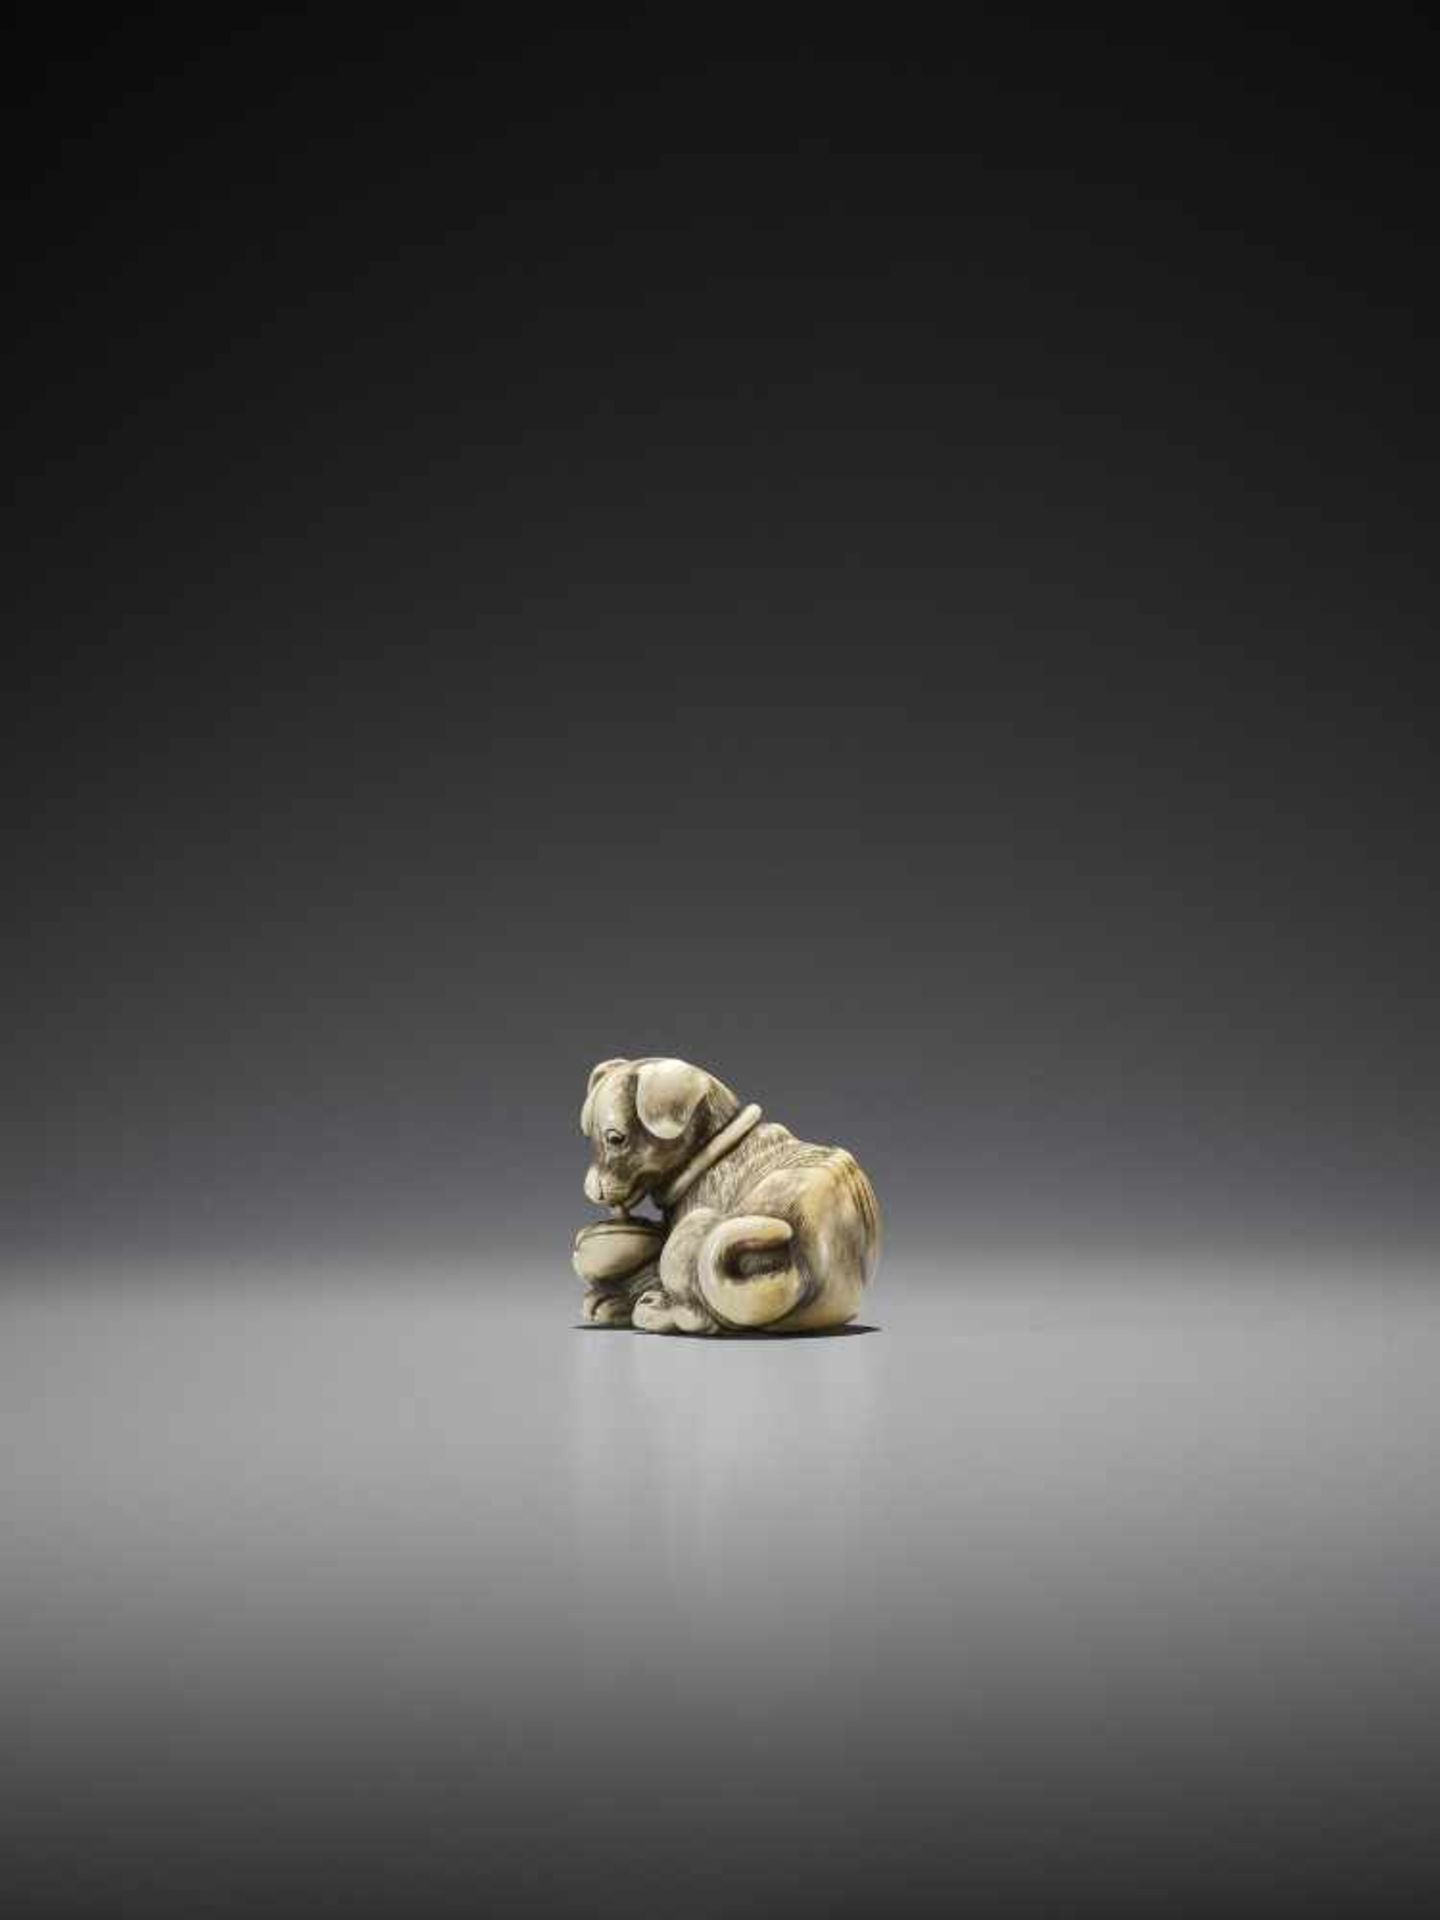 TOMOTADA: A SUPERB IVORY NETSUKE OF A DOG WITH HAMAGURI CLAM - Image 7 of 10